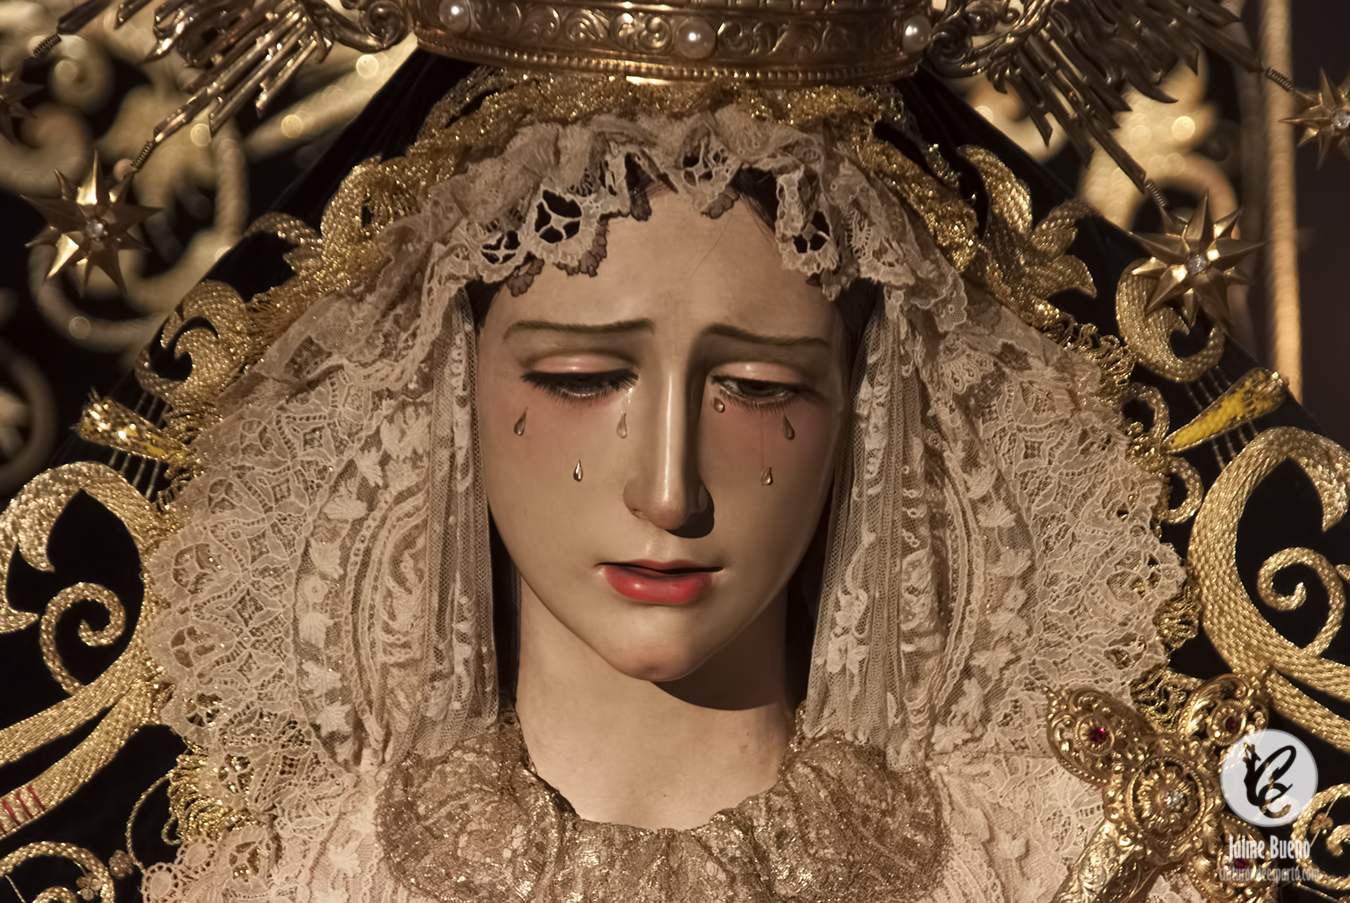 Todos los Datos de la salida procesional extraordinaria con motivo del 450 aniversario de la devoción a la Soledad de María Santísima. Huelva 13 de Mayo del 2023